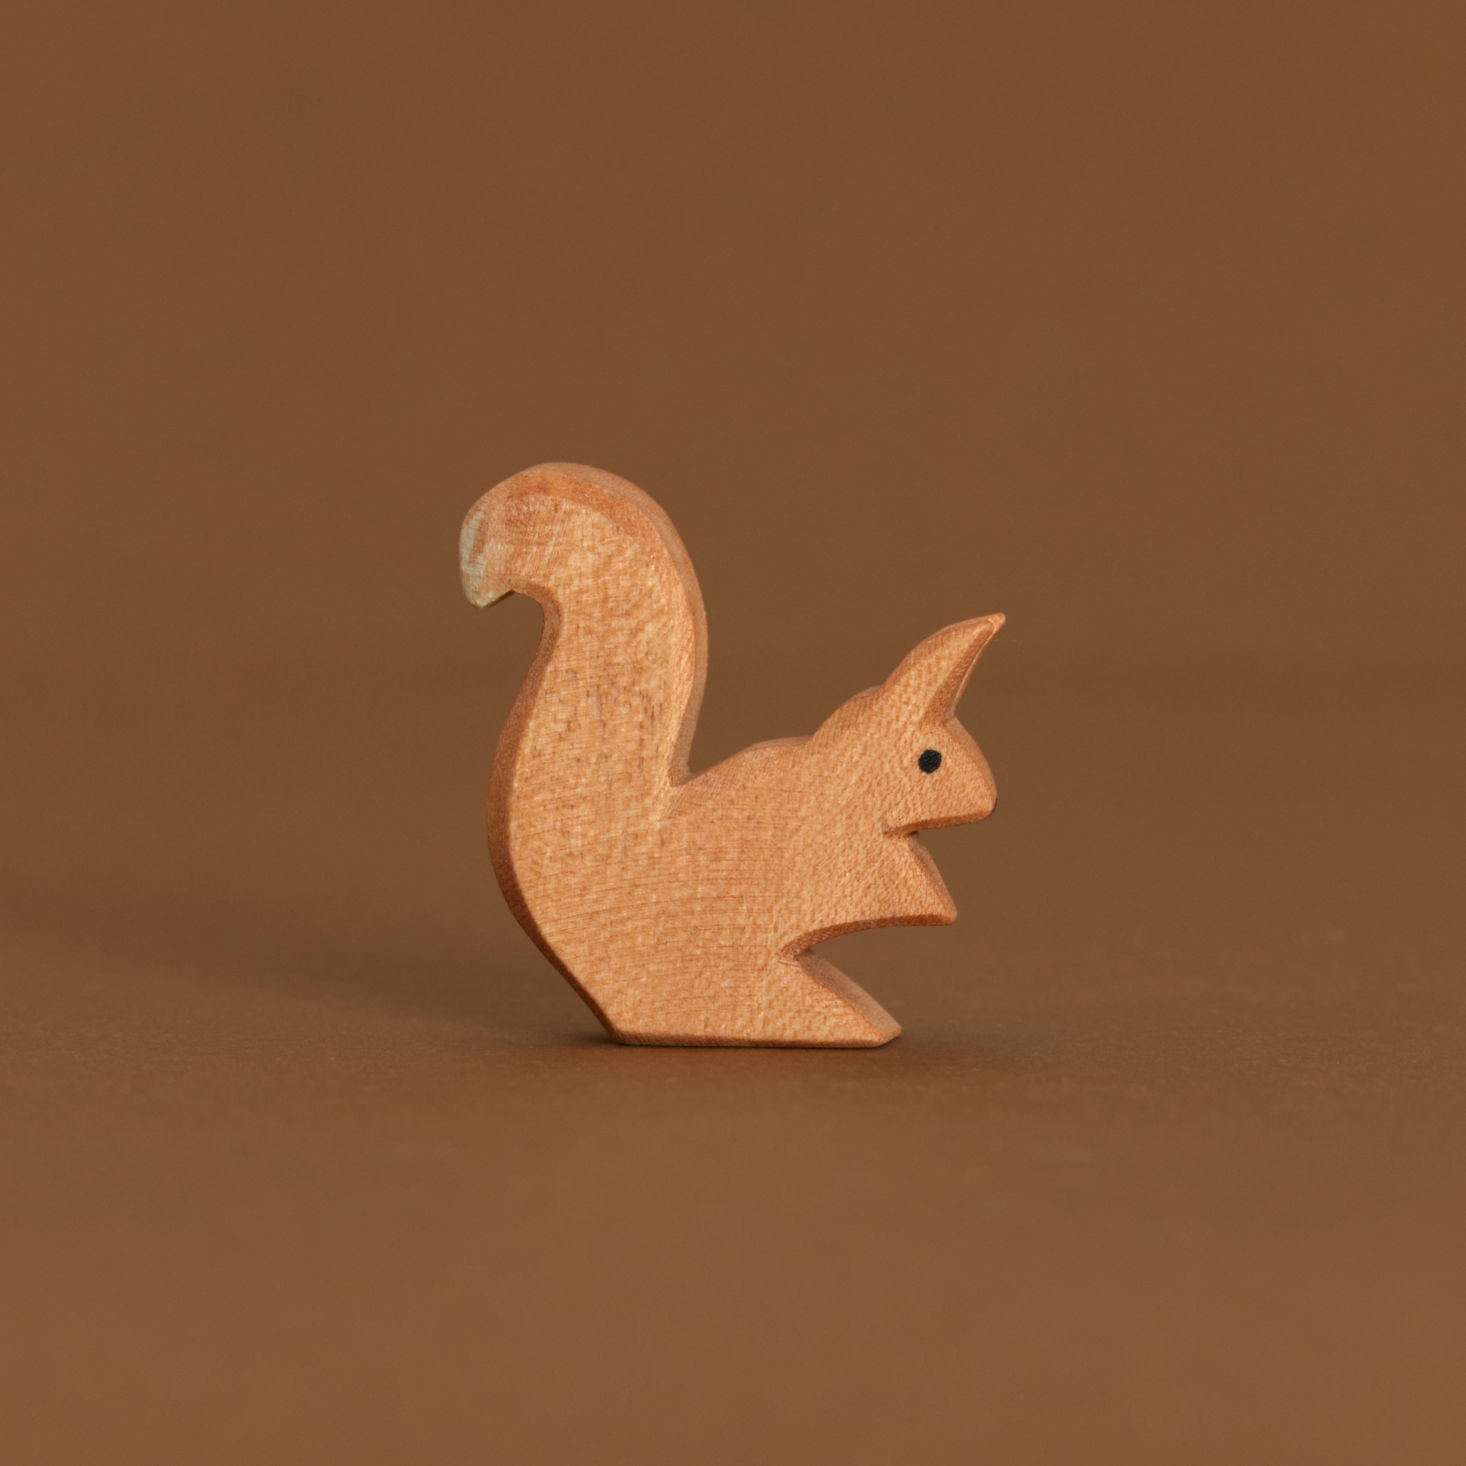 Ostheimer Eichhörnchen sitzend, aus Naturholz gefertigt. Es ist leicht nach vorne gebeugt, genauso das Ohr. Der Schwanz mit weißer Spitze zeigt jedoch nach oben.